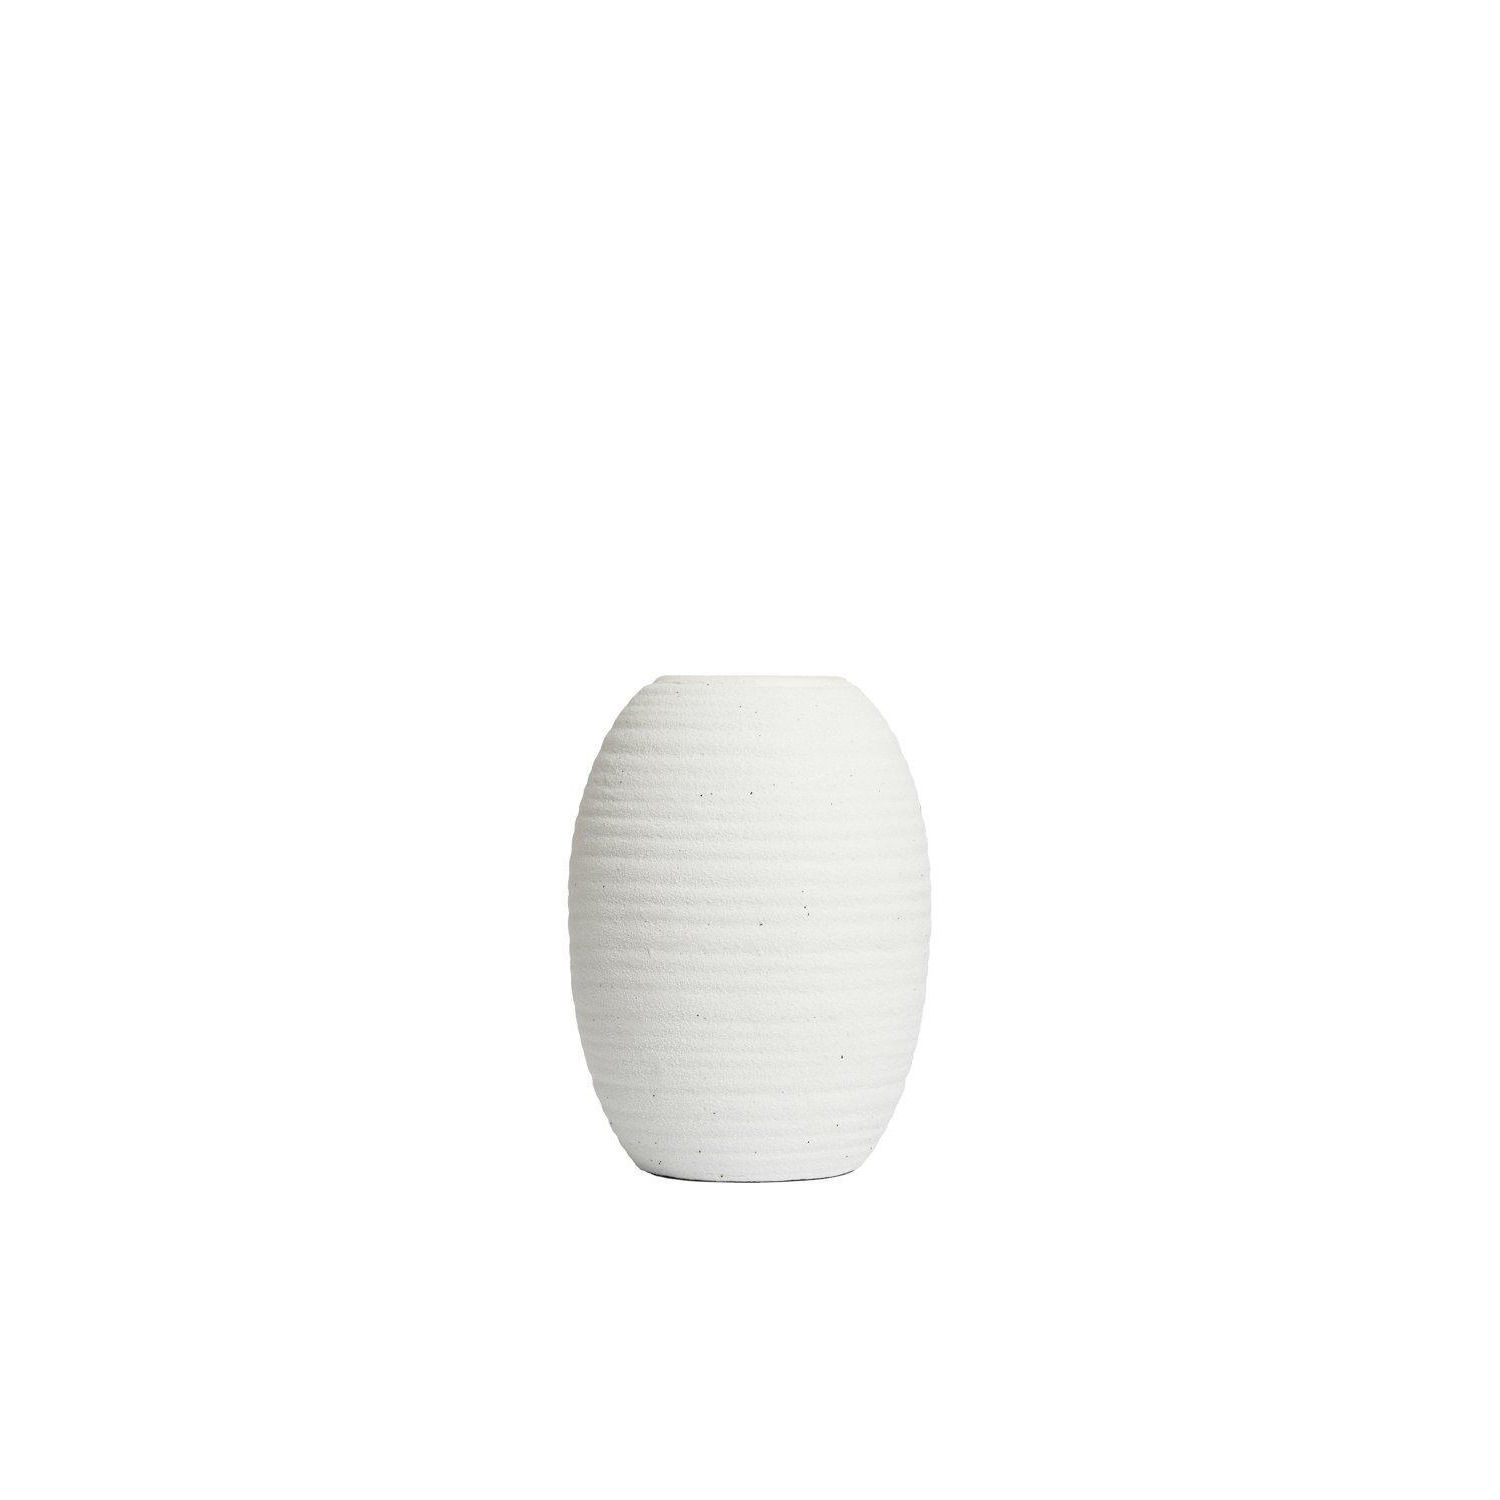 Small Textured Ceramic Vase - image 1